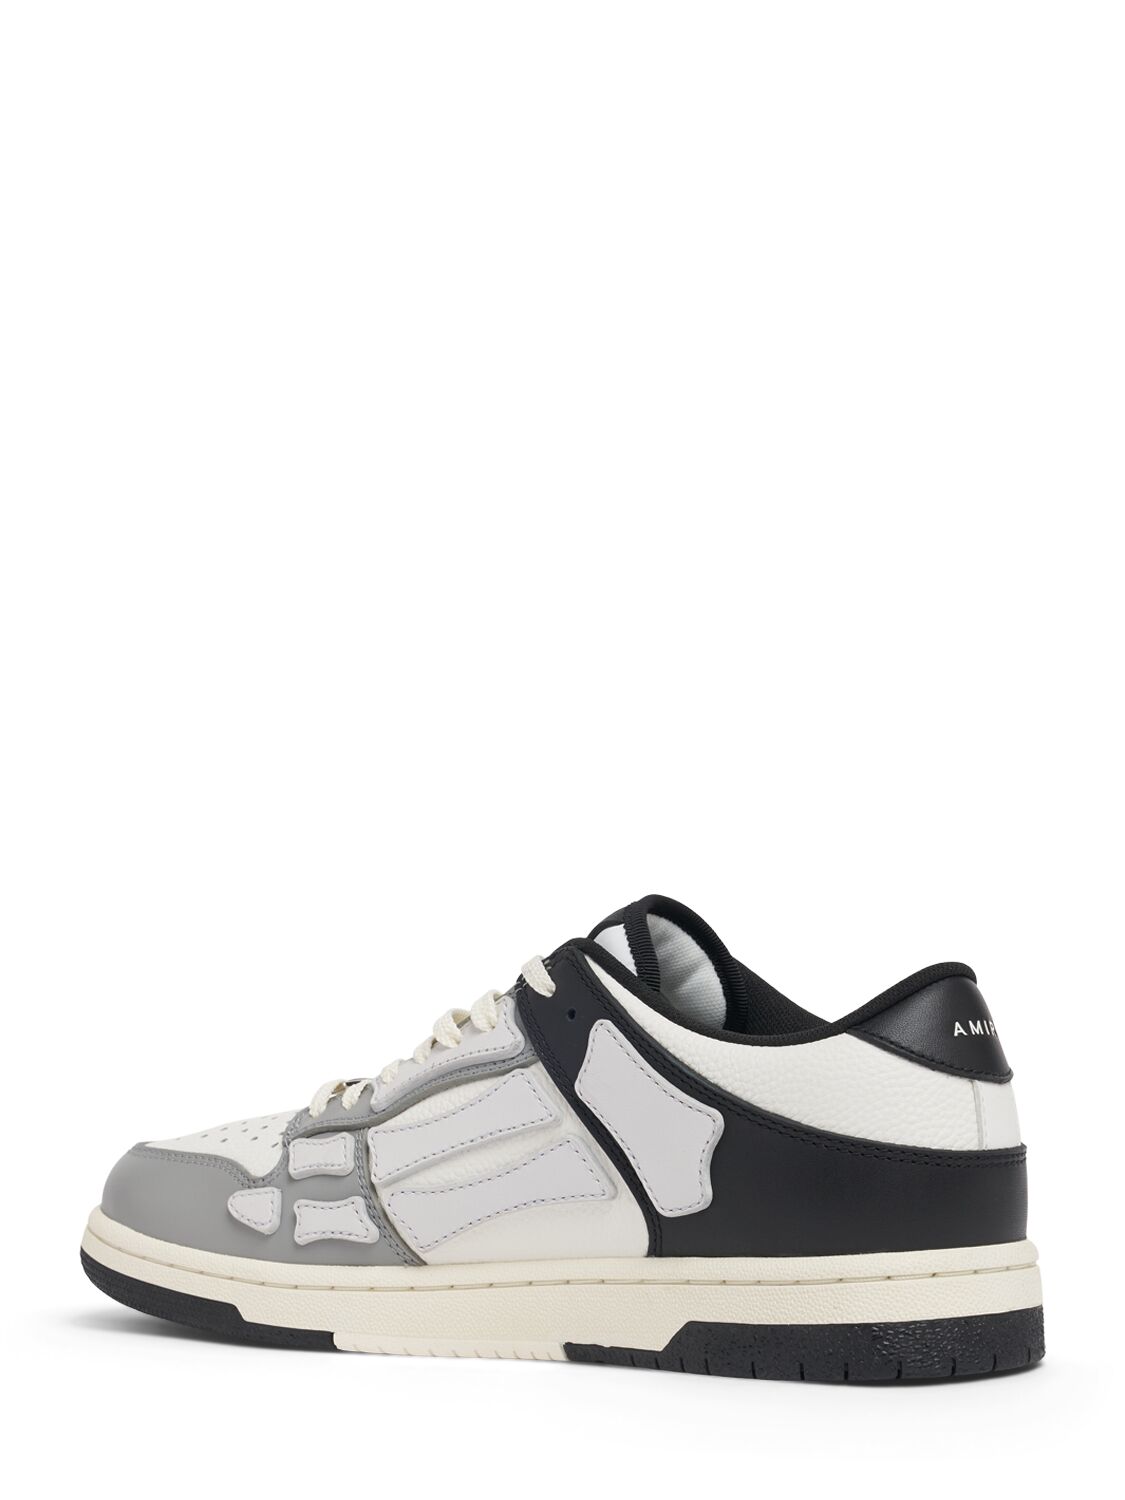 Shop Amiri Two-tone Skel Top Low Sneakers In Black/white/gre